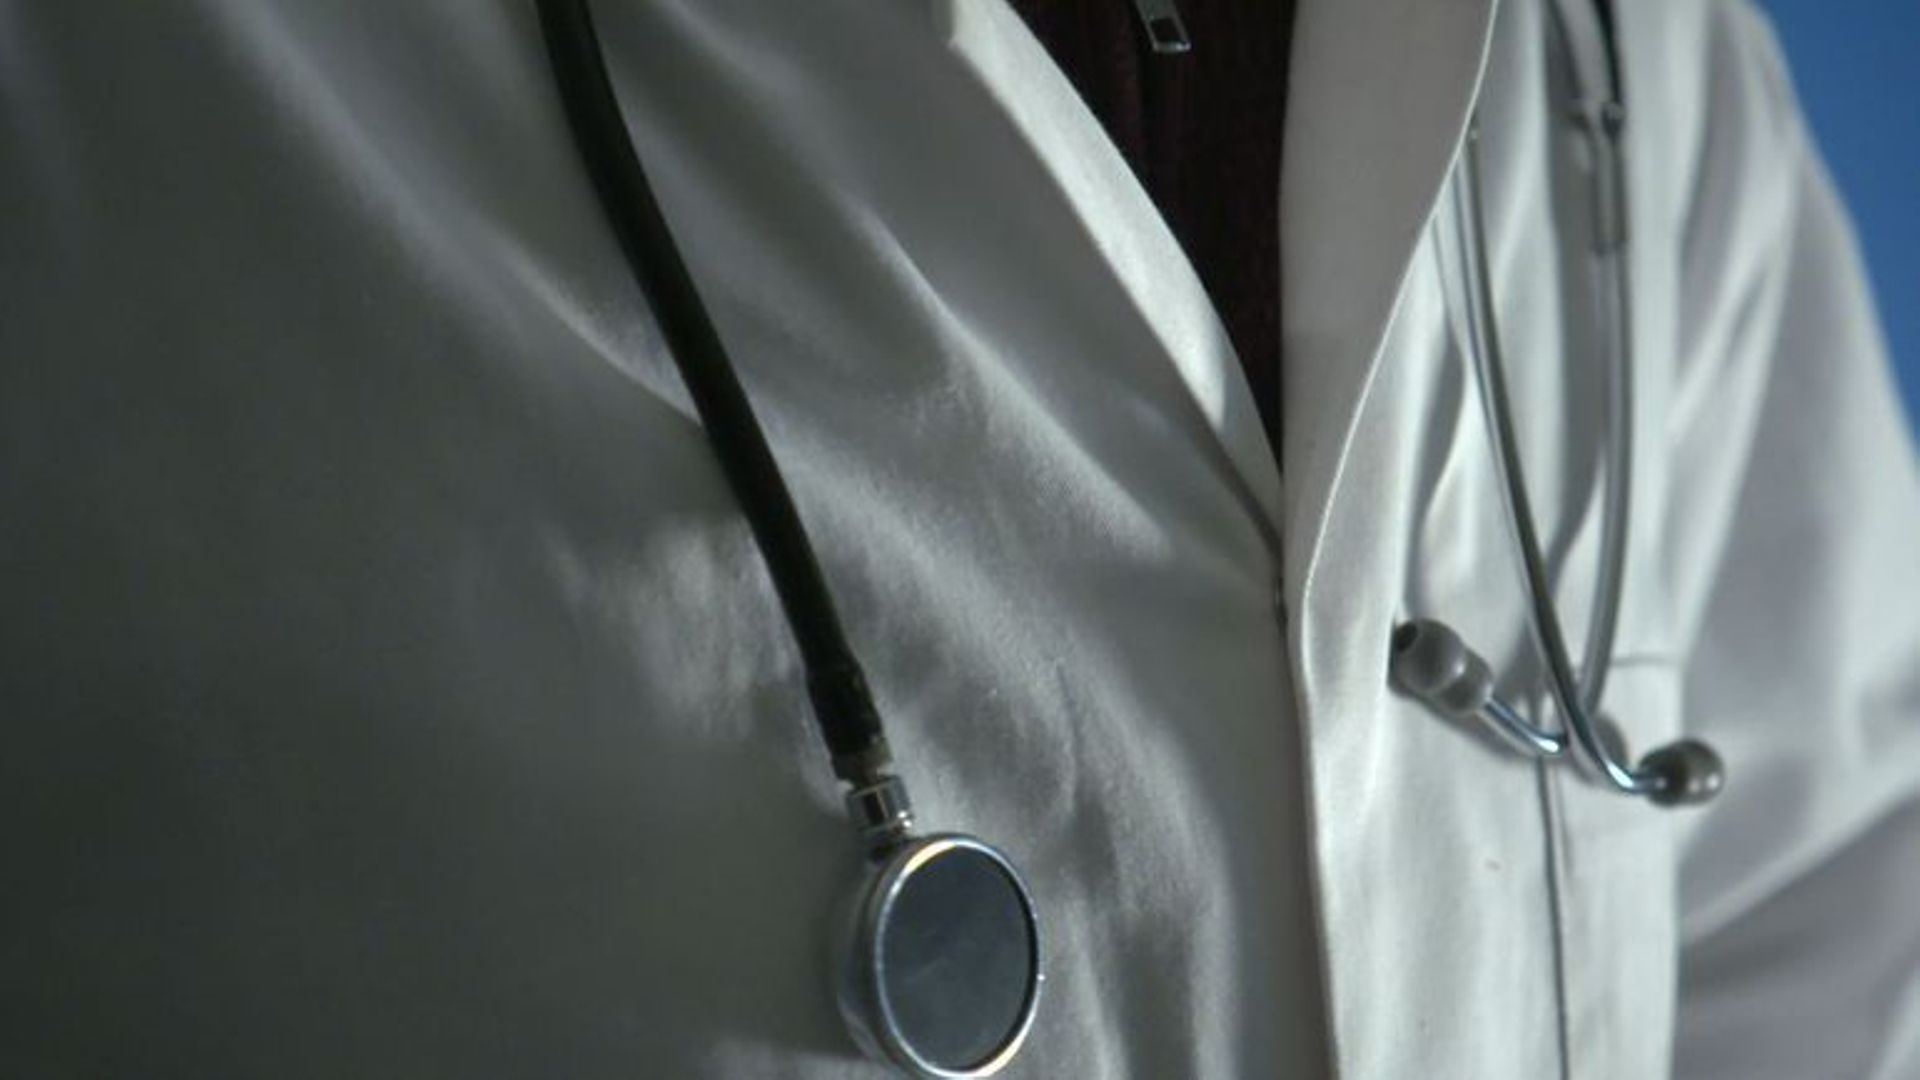 Malades, les assistant médecins liégeois "vont tout de même travailler"